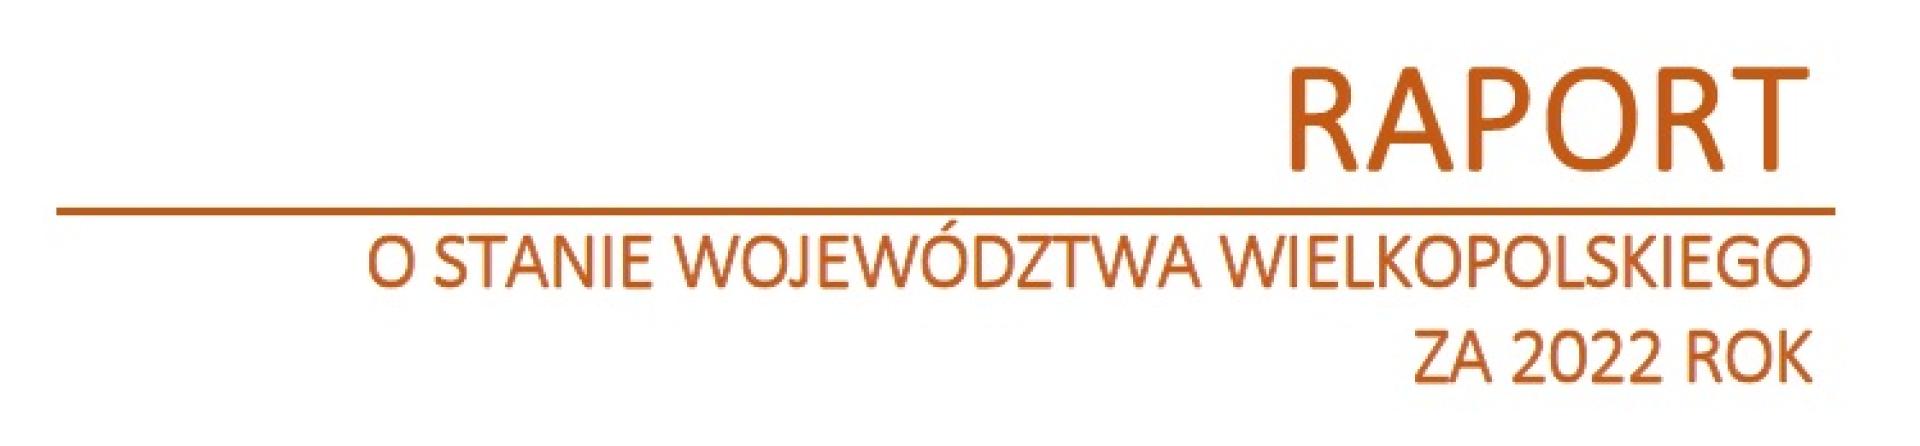 Informacja o możliwości udziału mieszkańców Wielkopolski w debacie nt. Raportu o stanie Województwa Wielkopolskiego za 2022 rok - zobacz więcej